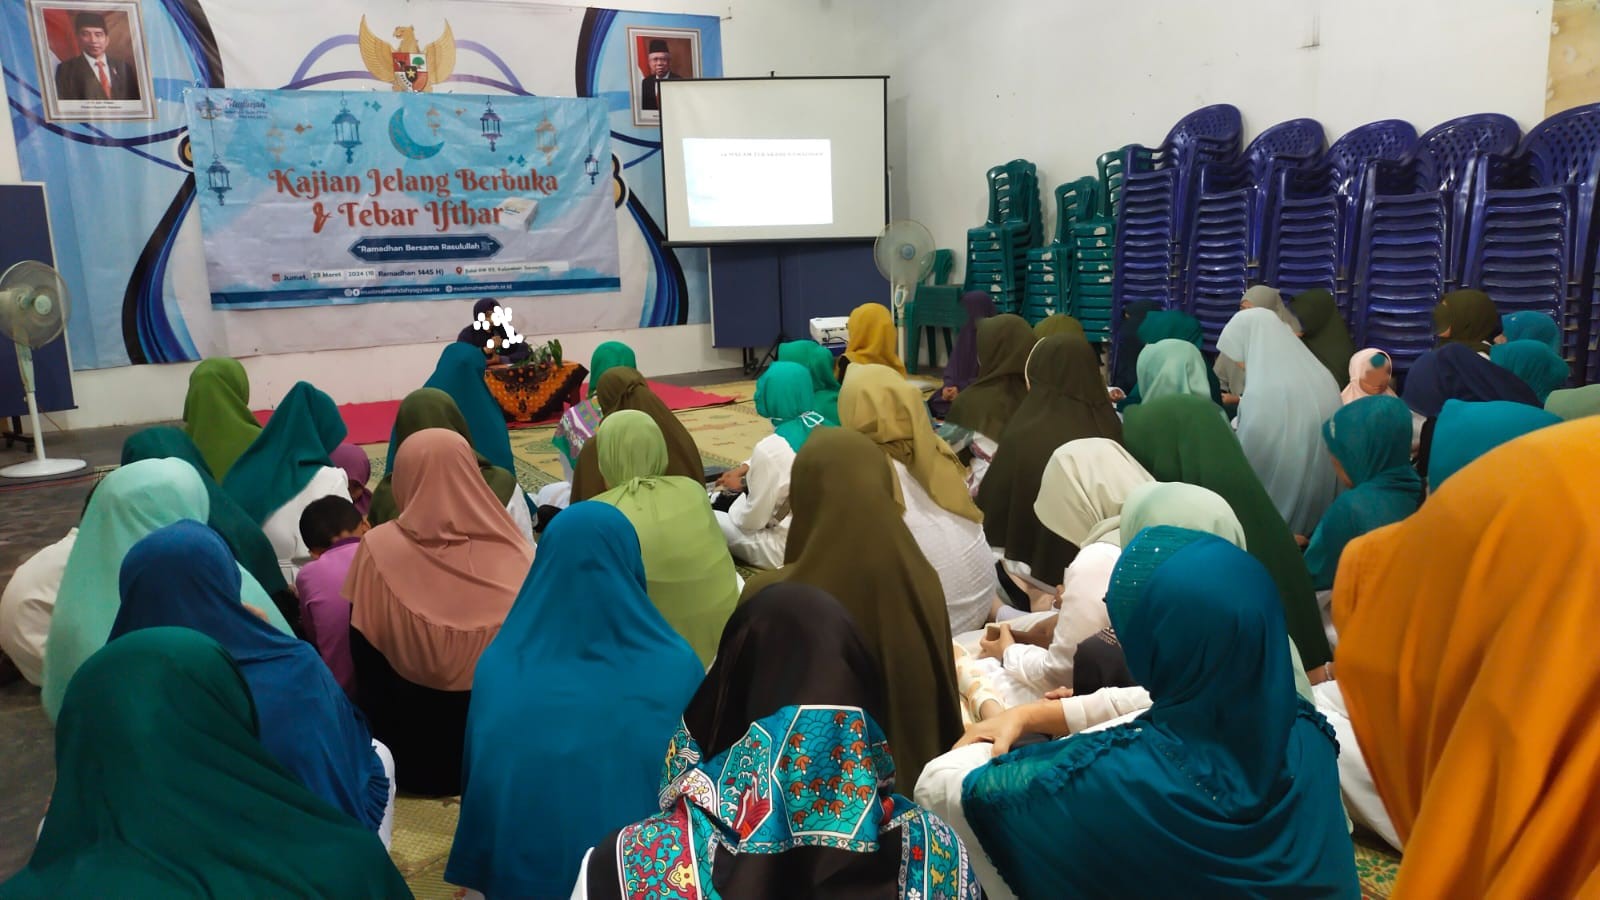 Muslimah Wahdah Kota Yogyakarta Gelar Tebar Ifthar Tahap Kedua Dirangkaikan Bazar Amal